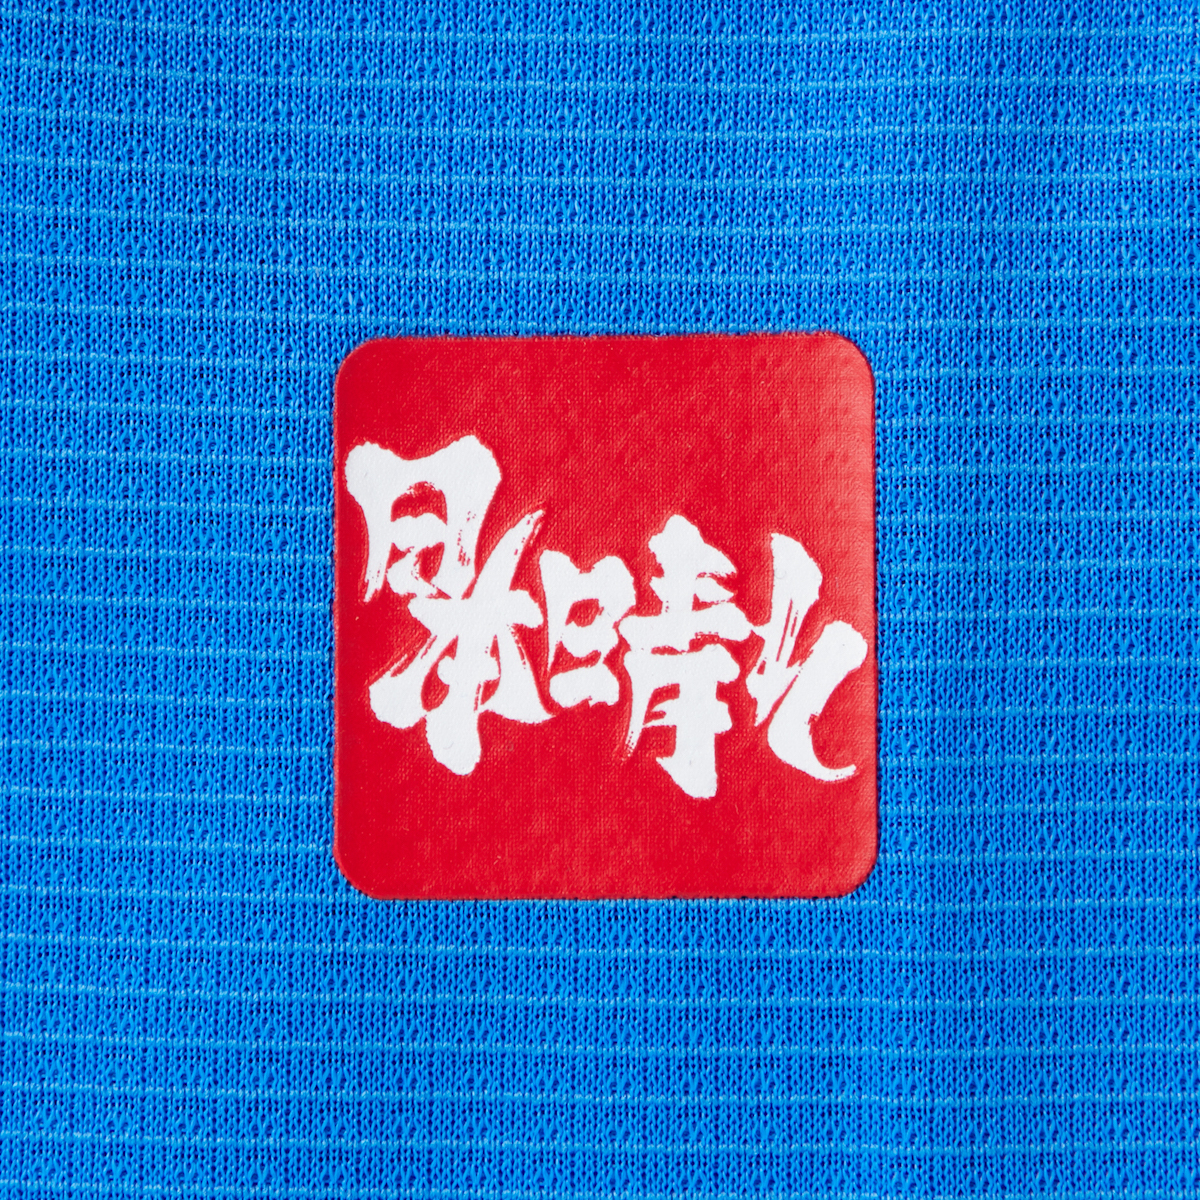 サッカー日本代表の新ホームユニホームは目を引く スカイコラージュ 柄に 東京五輪でも着用 Wwdjapan